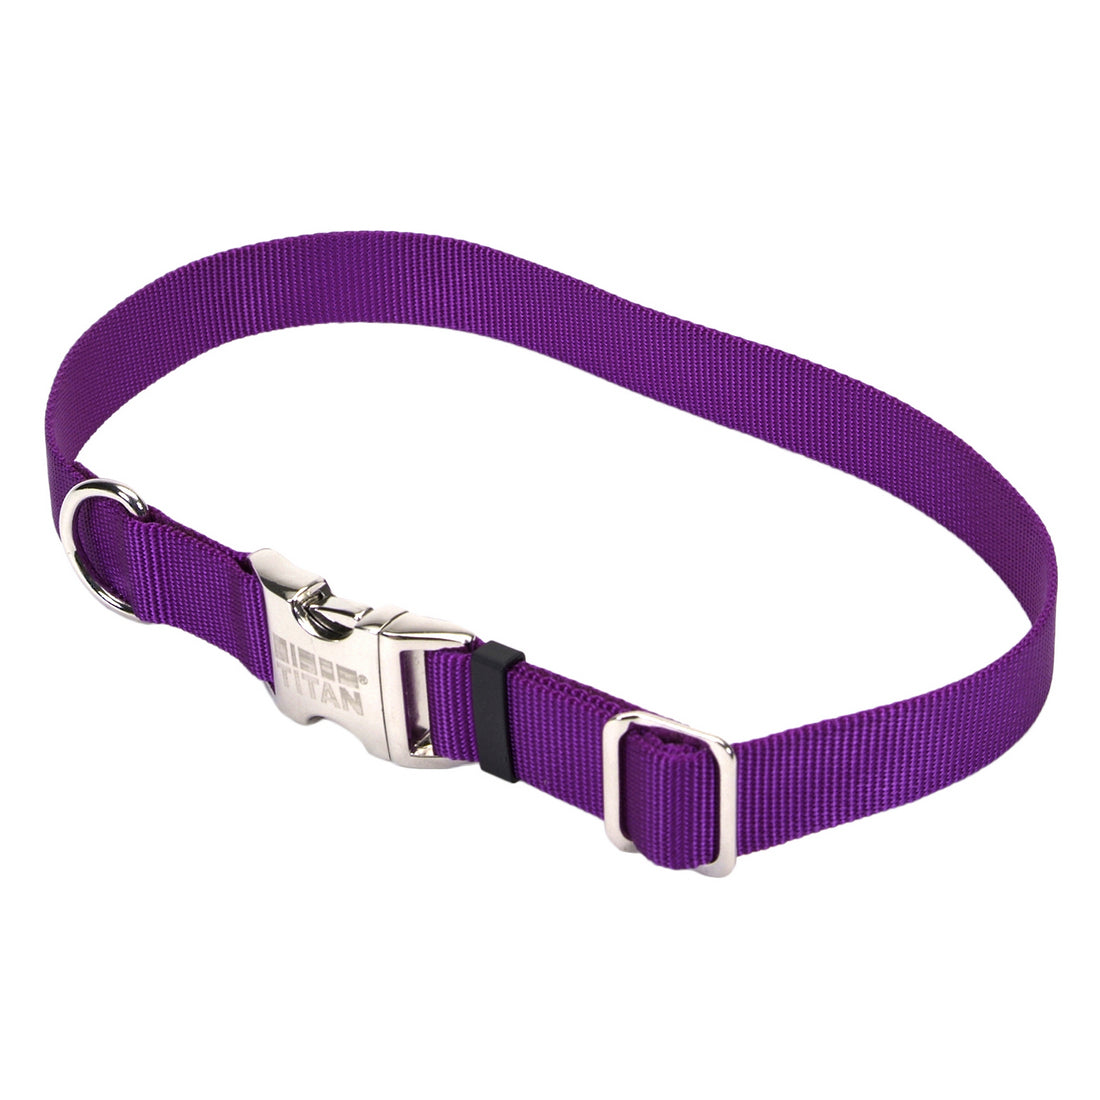 Coastal Adjustable Nylon Collar with Metal Buckle Medium Purple